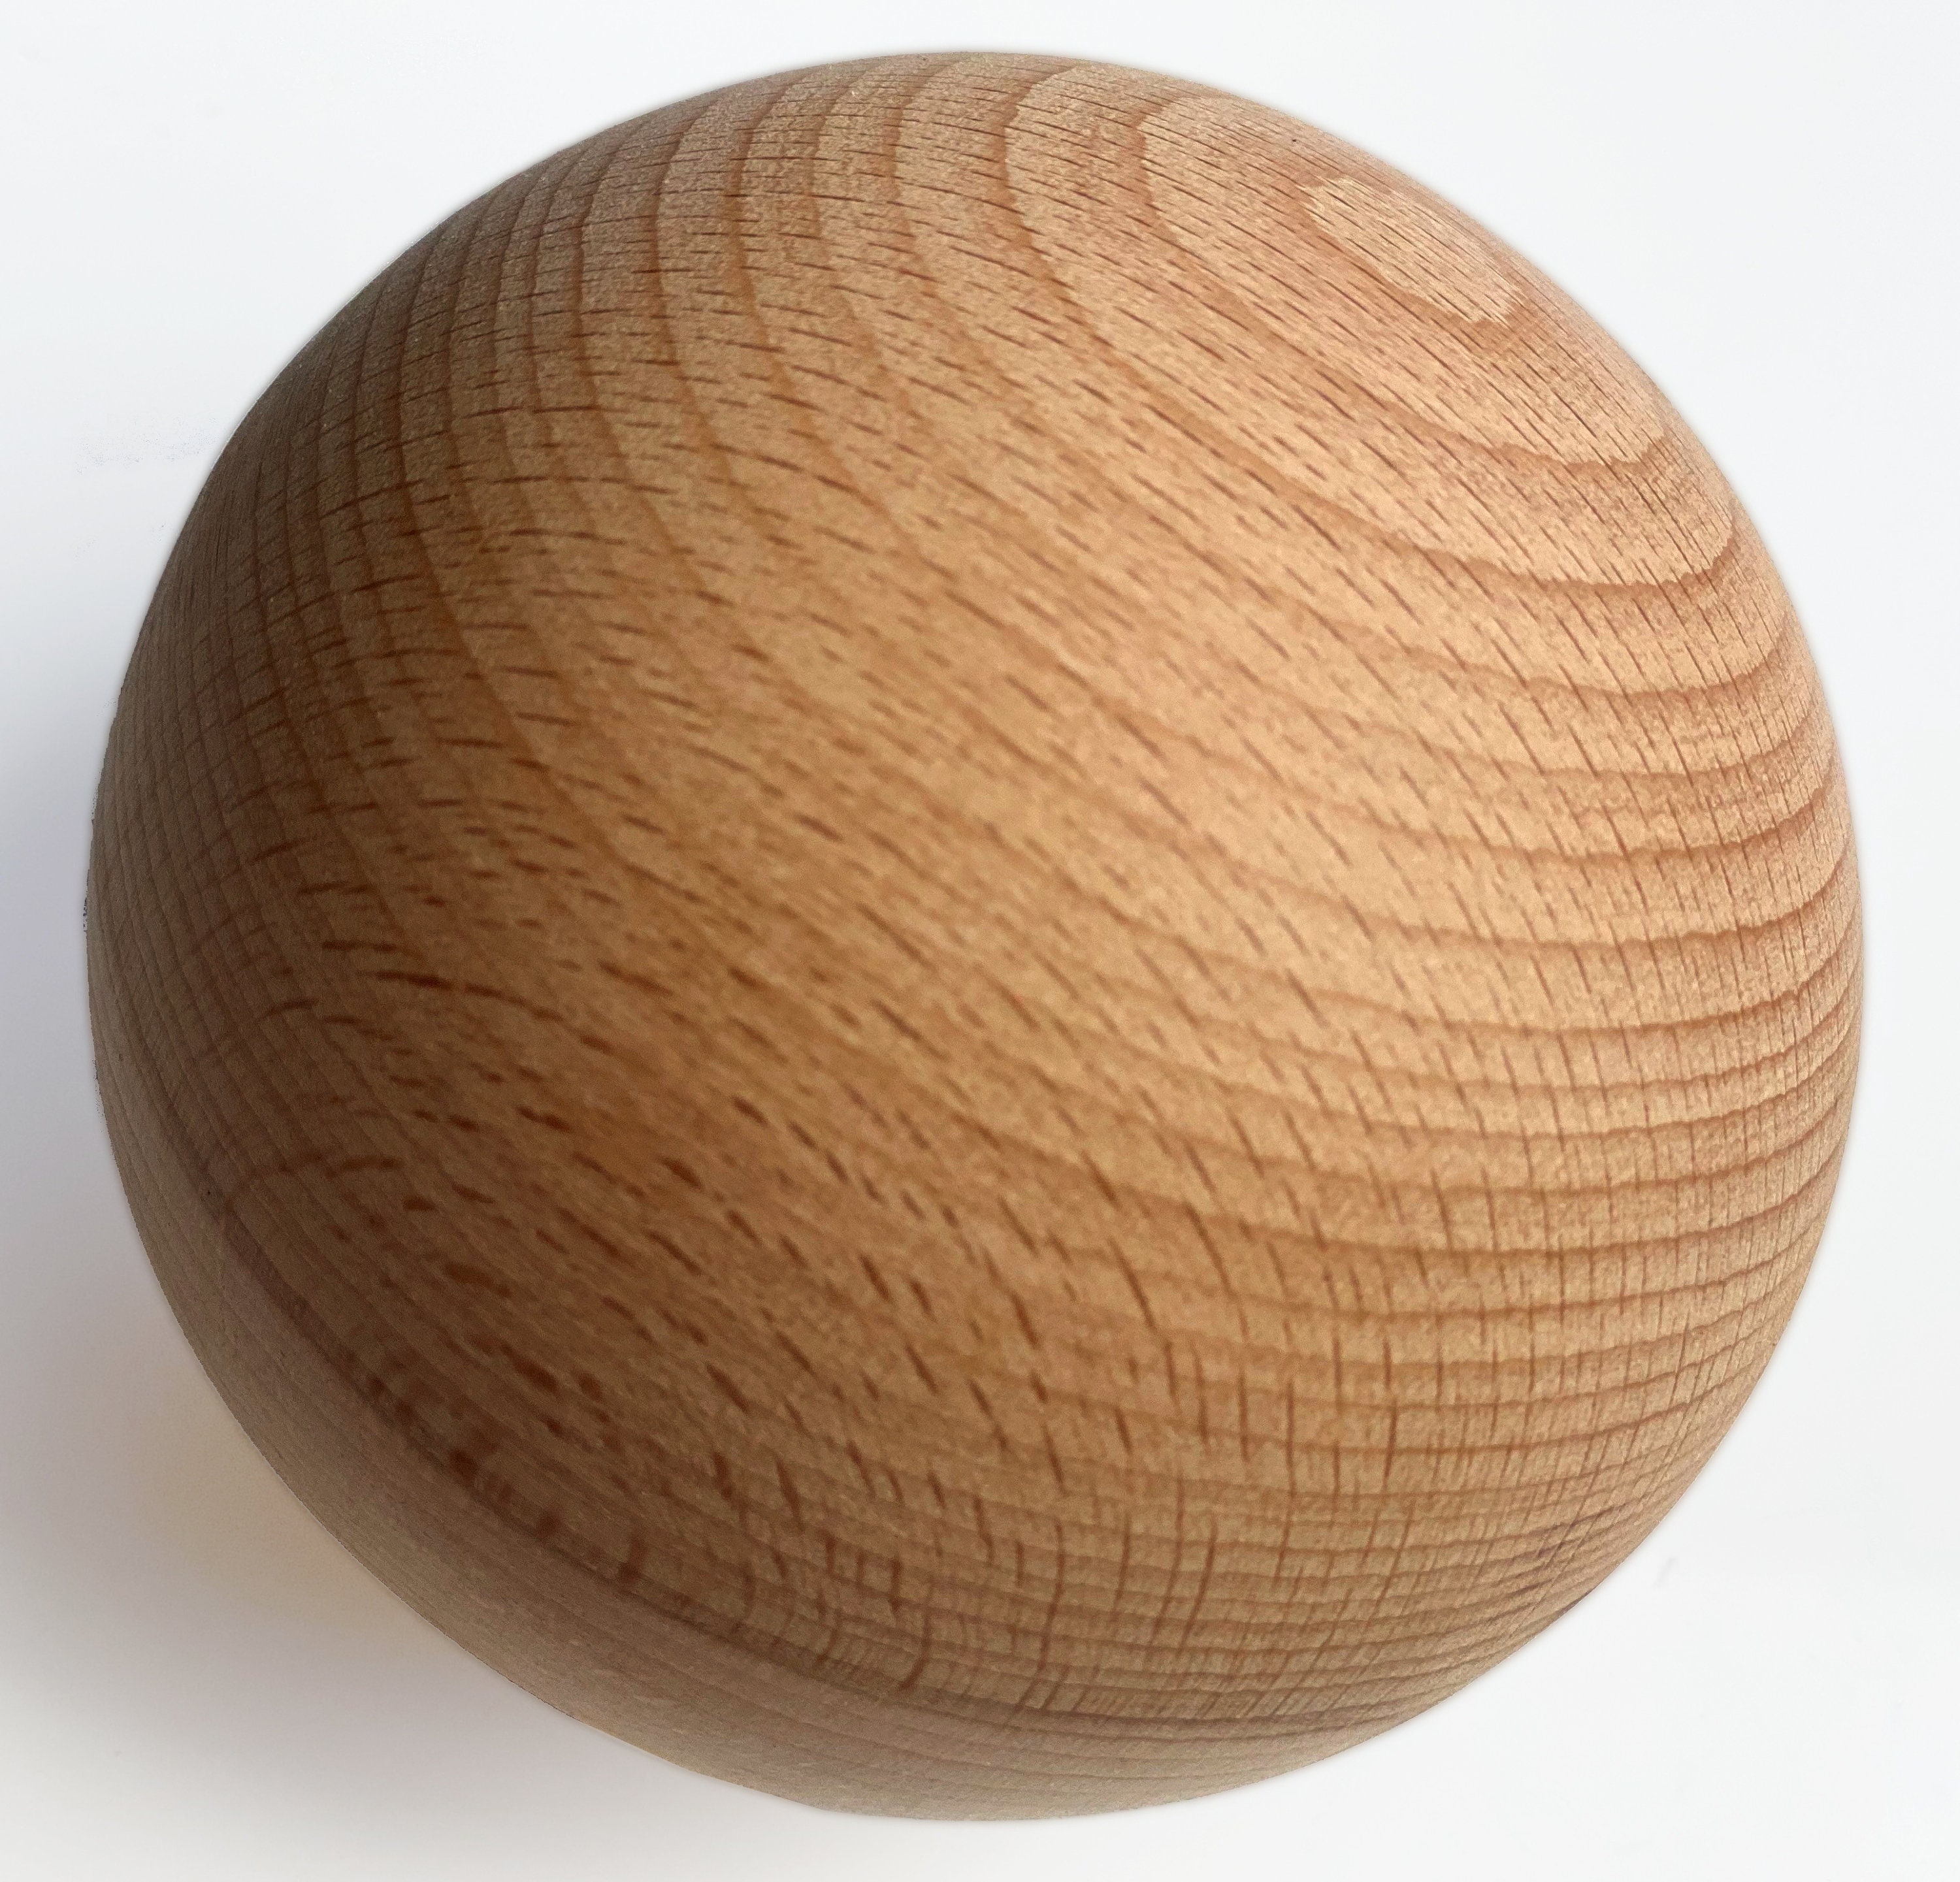 Large Craft Foam Balls 120mm Diameter for Kunst und Skulpturen